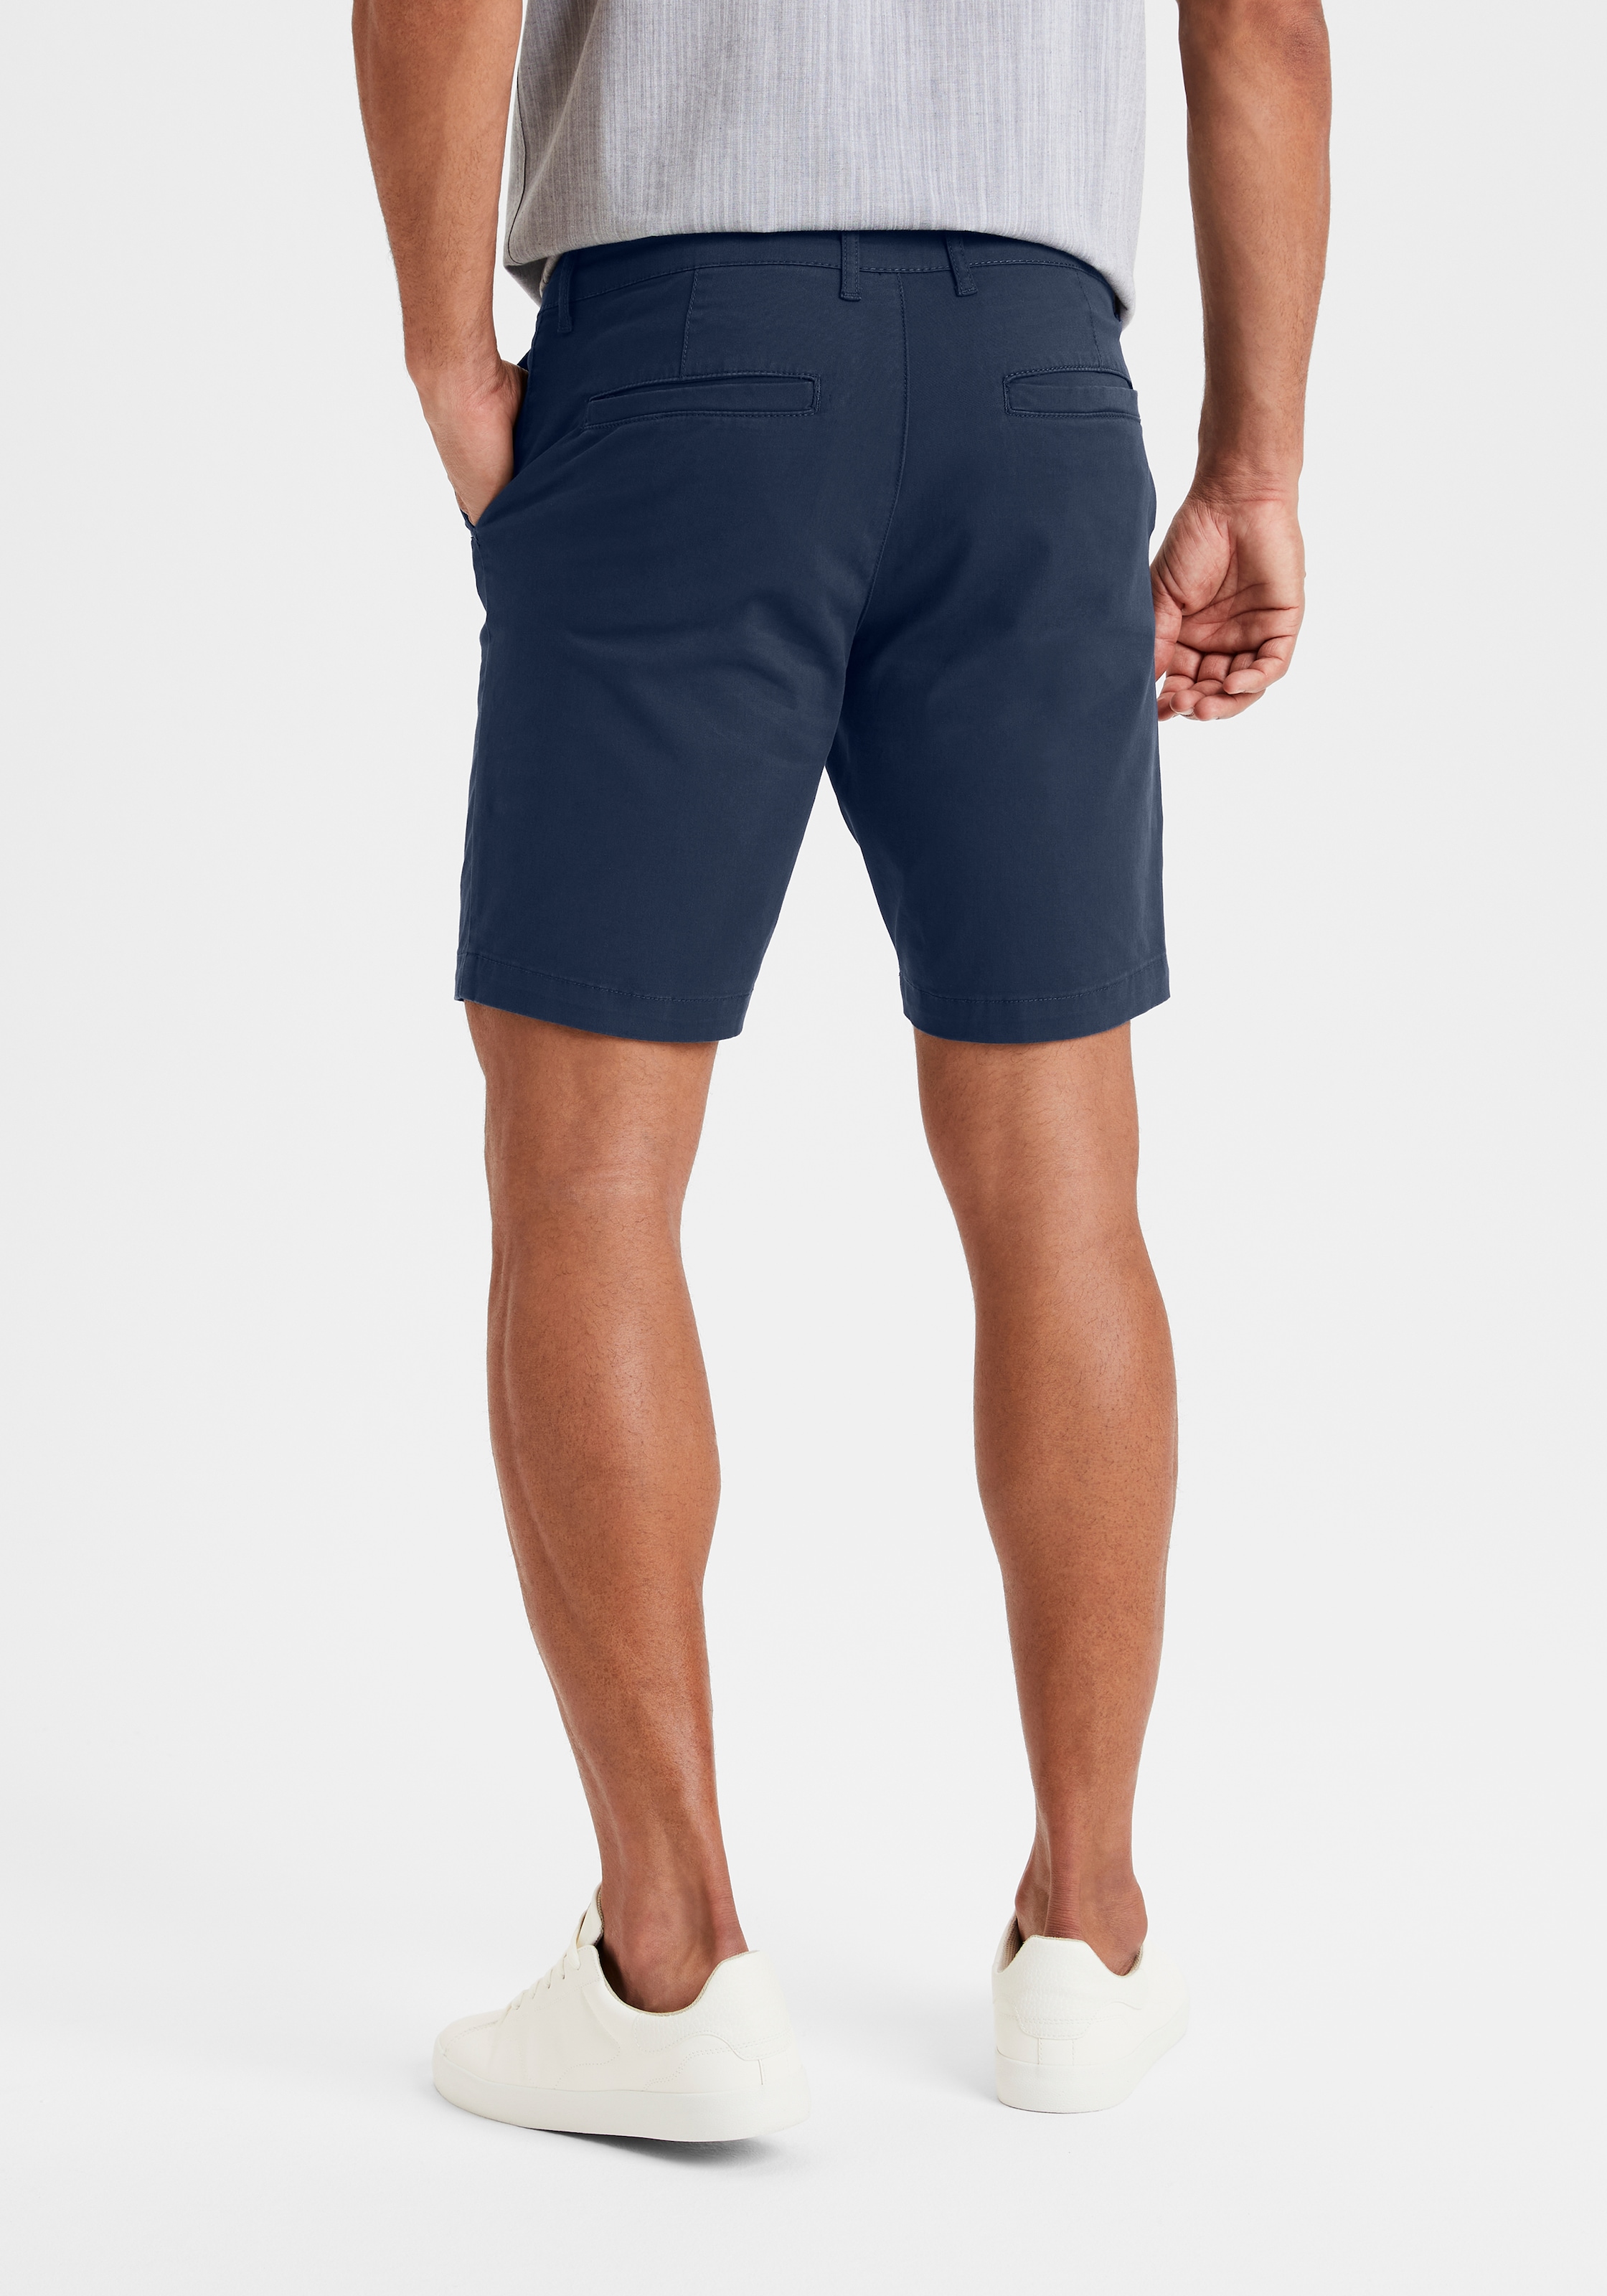 H.I.S Chinoshorts, Shorts mit normaler Leibhöhe aus elastischer Baumwoll-Qualität